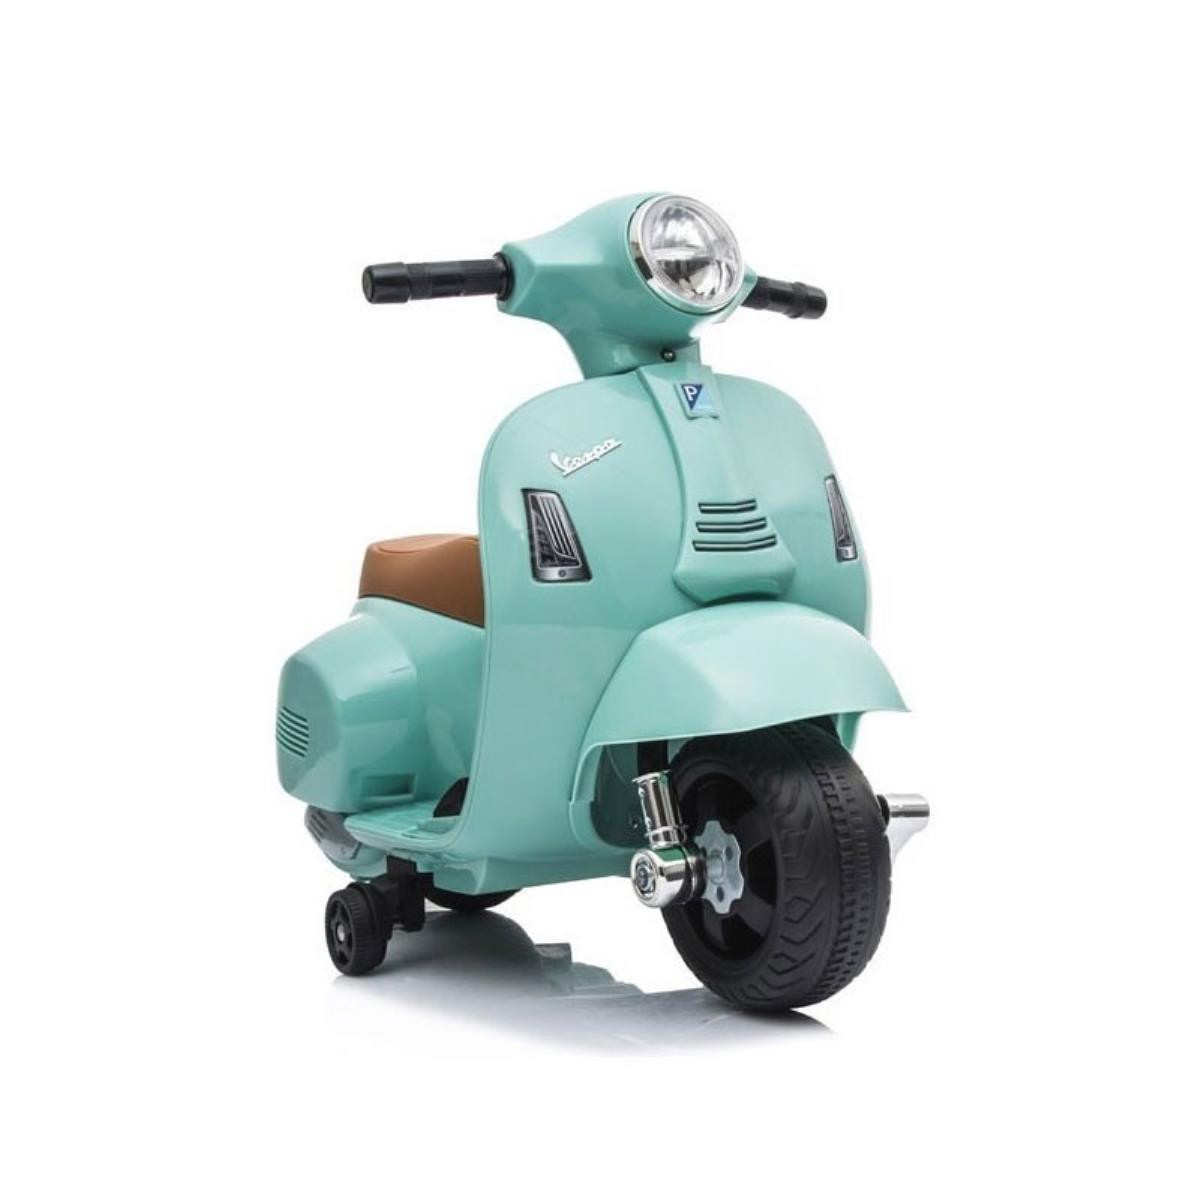 Ciclomotor de moto vespa bonito cor verde. conceito de objeto dos